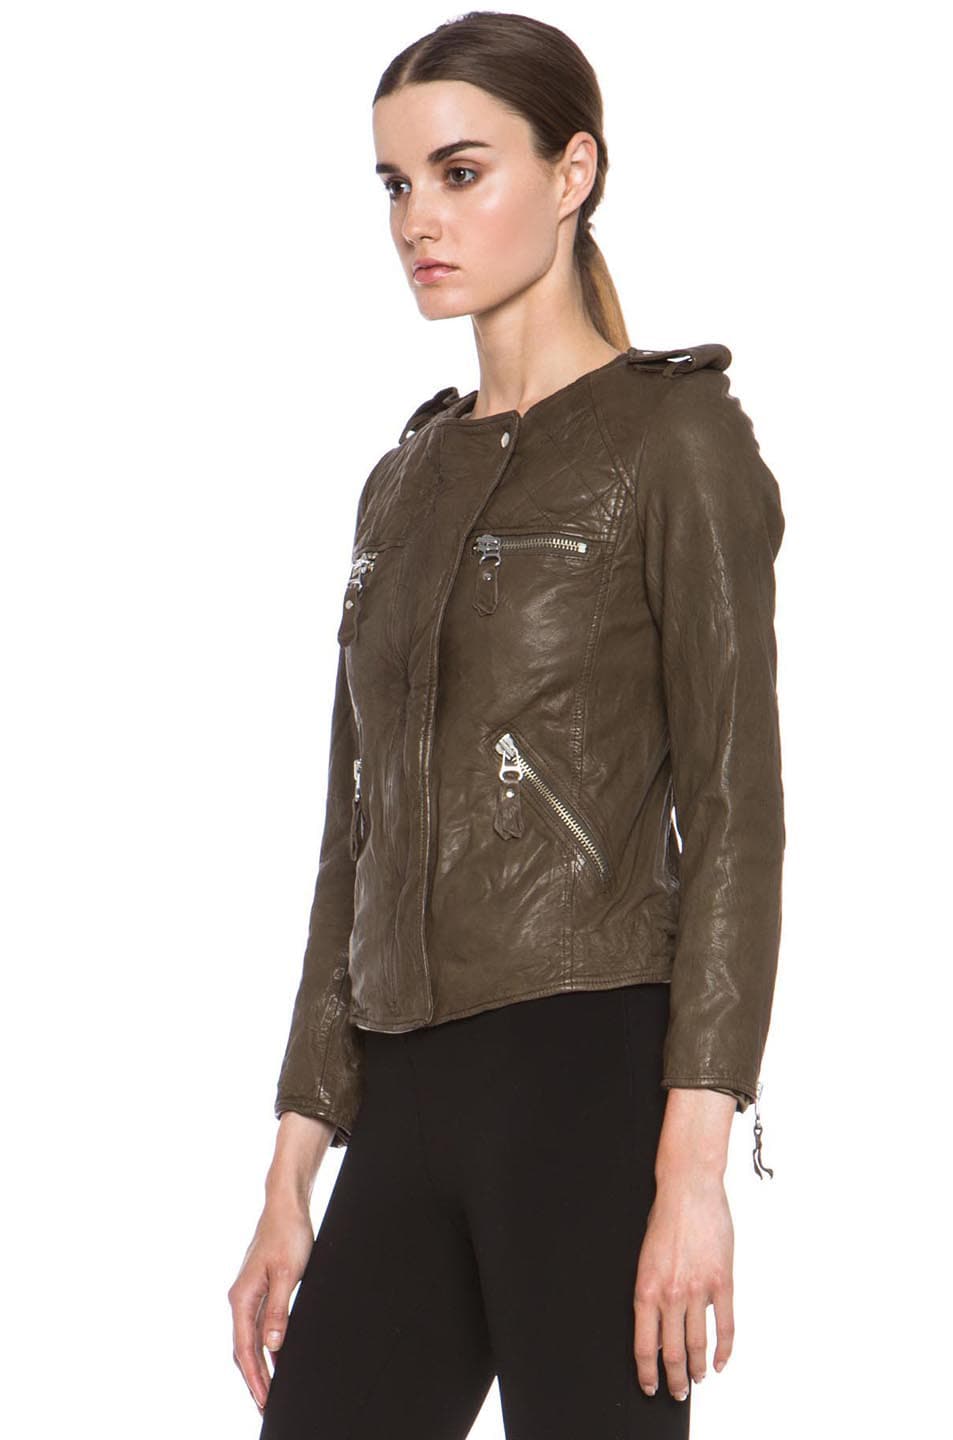 Isabel Marant Etoile Kady Washed Leather Jacket in Army Green | FWRD